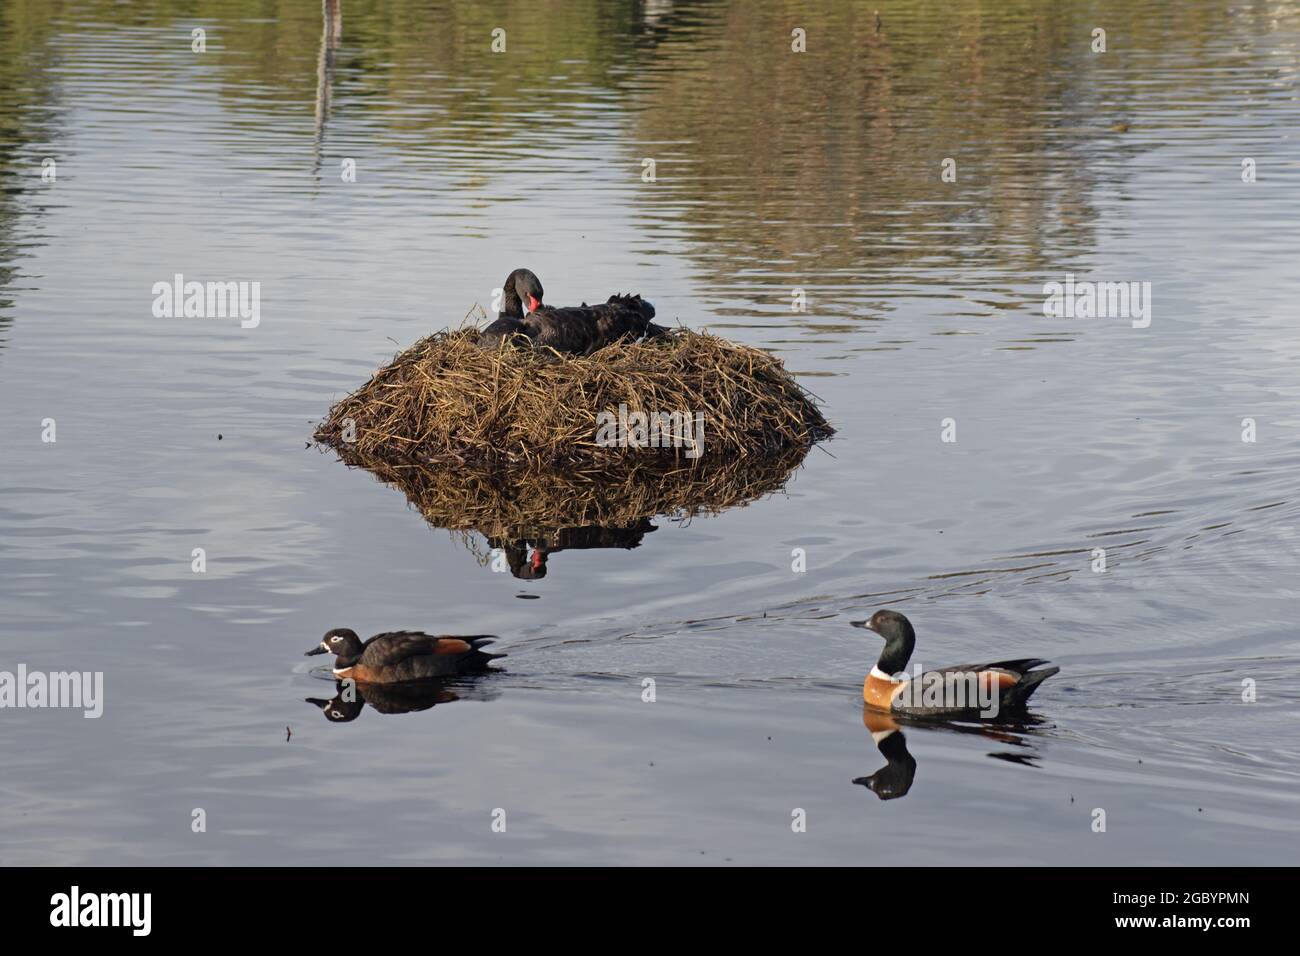 Black Swan Nesting while Ducks Swim Past Stock Photo